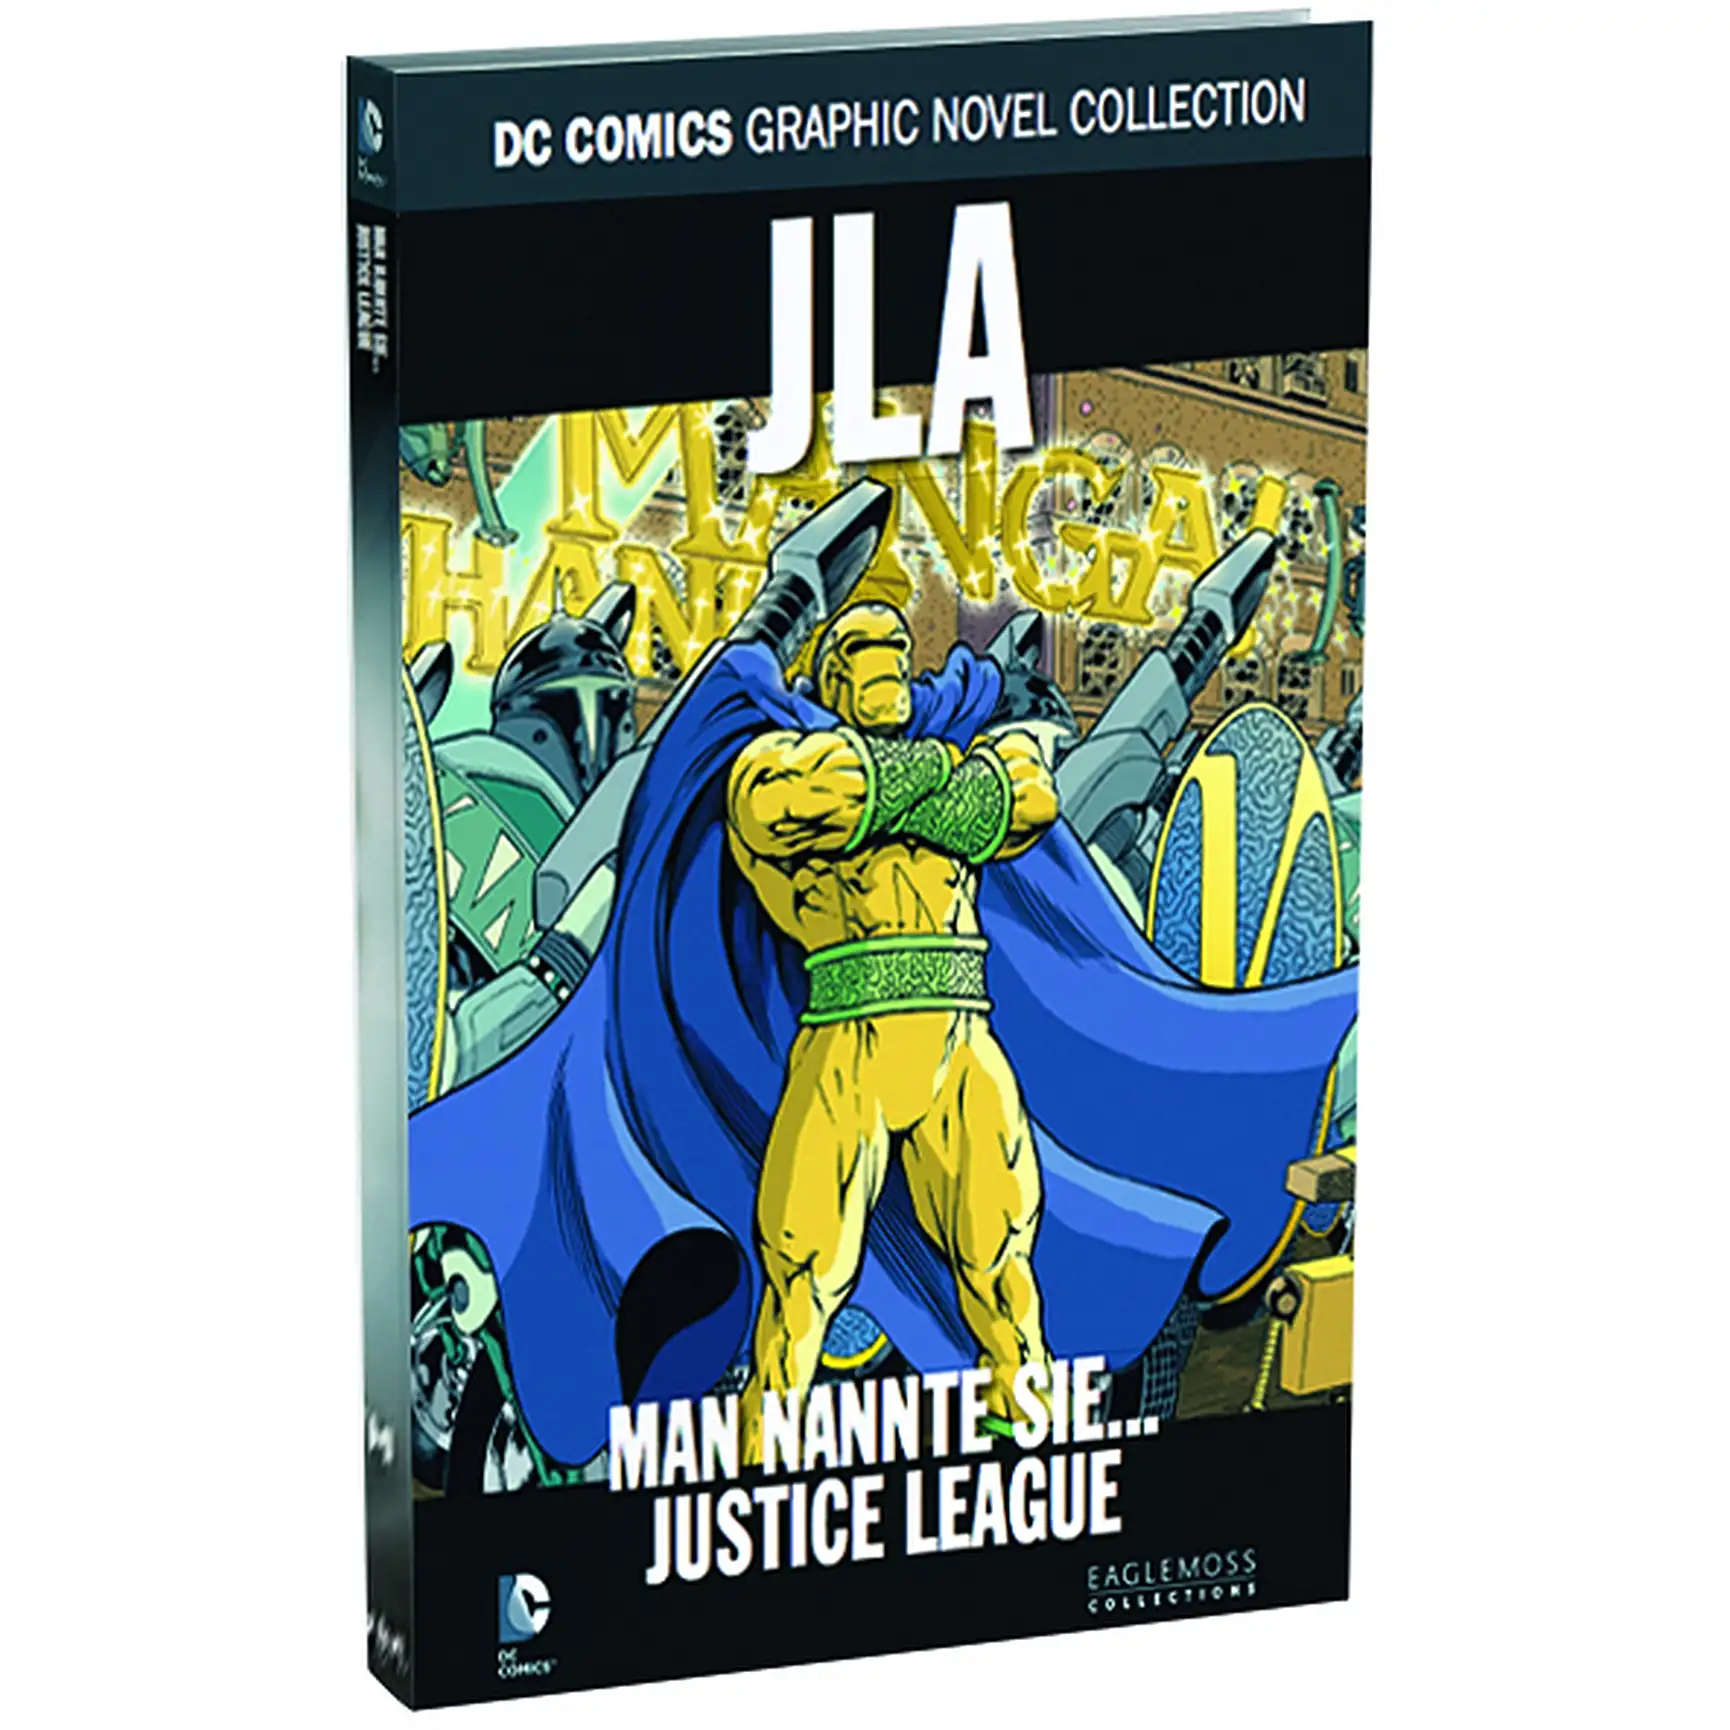 DC Comics Graphic Novel Collection JLA - Man nannte sie... Justice league